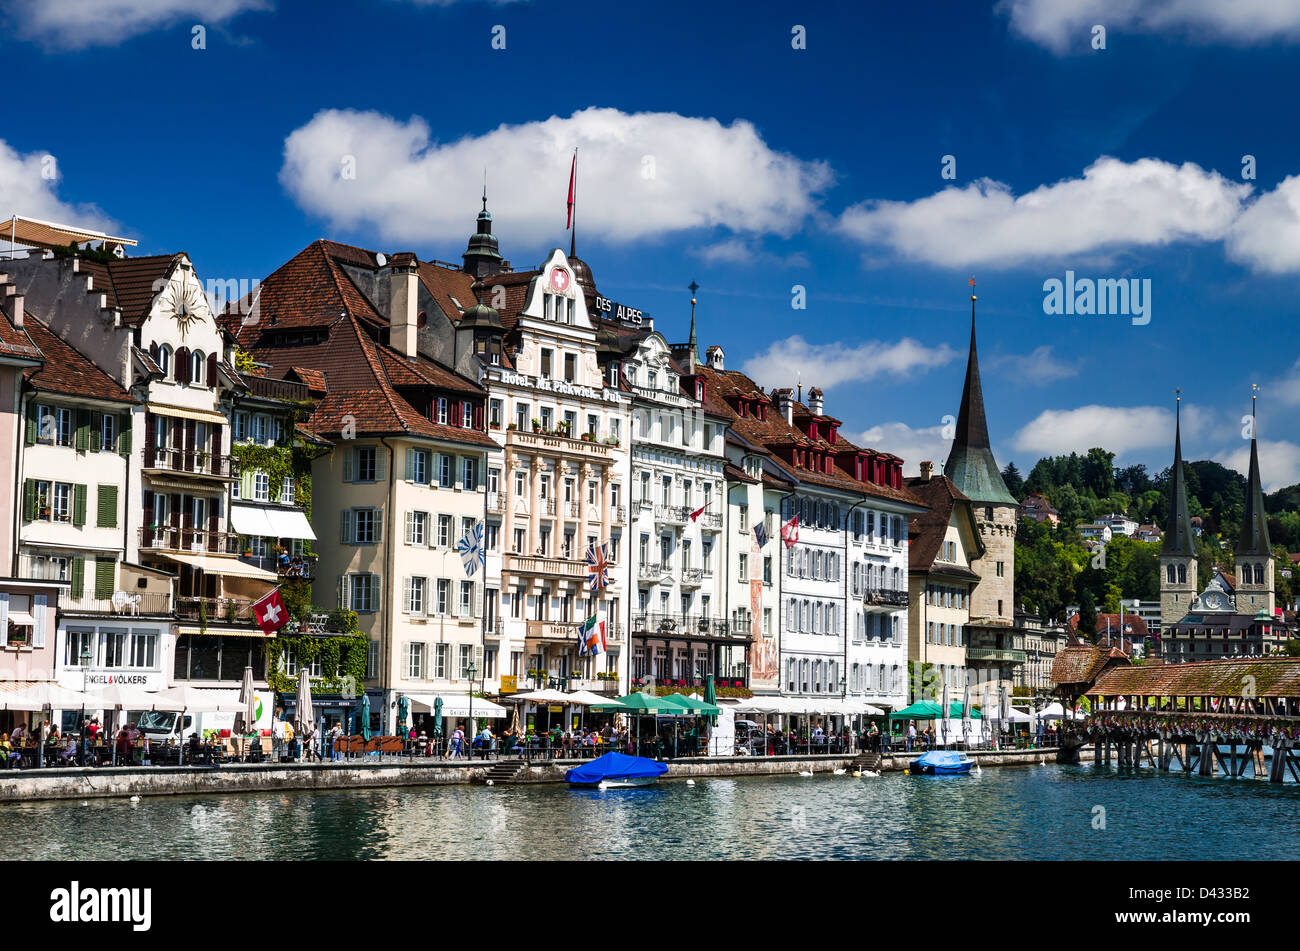 Zentralen Schweizer größte Stadt, liegt Luzern (Luzern in französischer Sprache) am westlichen Ufer des Sees denselben Namen. Stockfoto